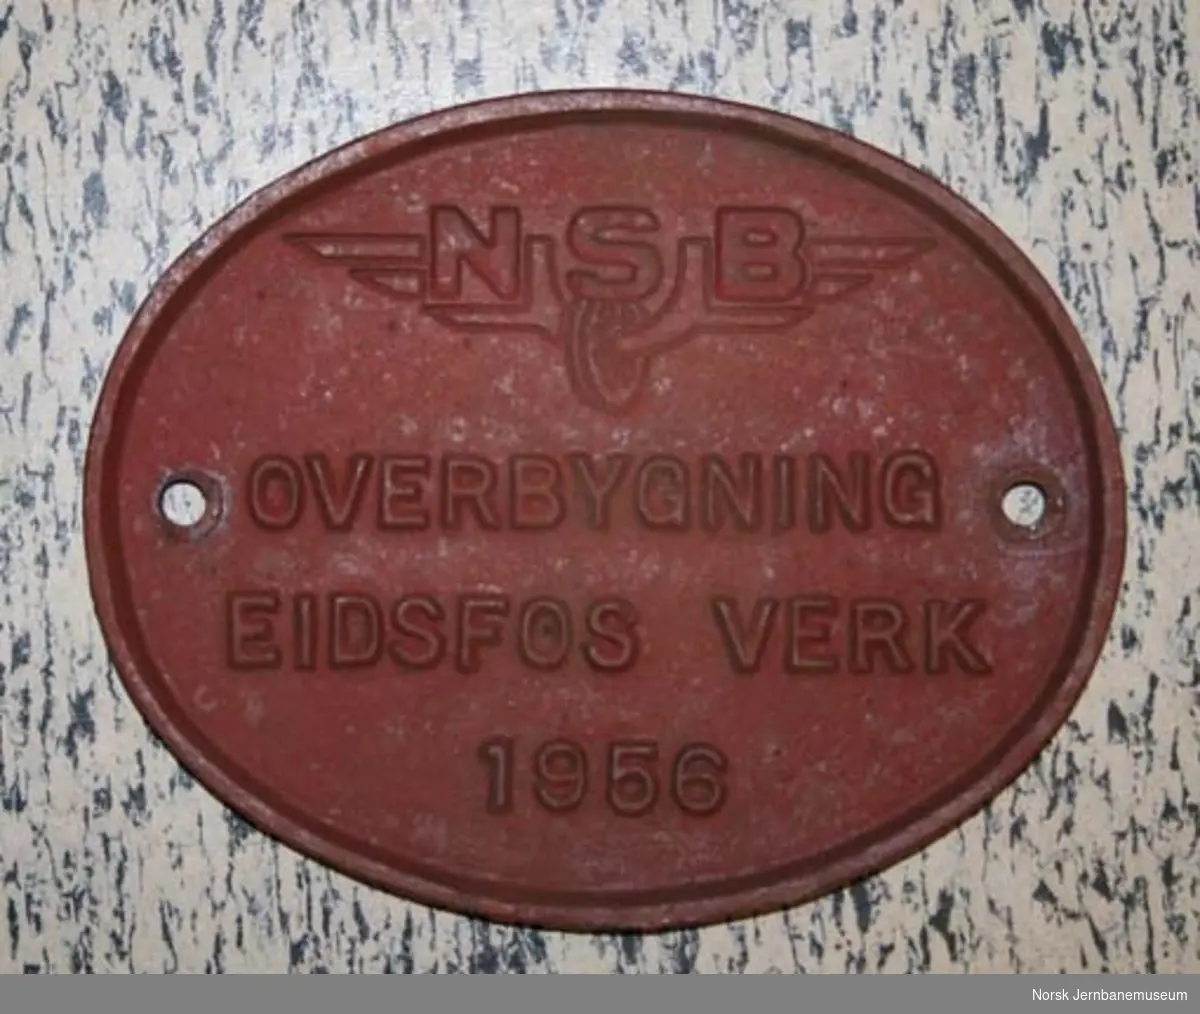 Fabrikkskilt fra Eidsfos Verk : "Overbygning Eidsfos Verk 1956" og NSB-vingehjul